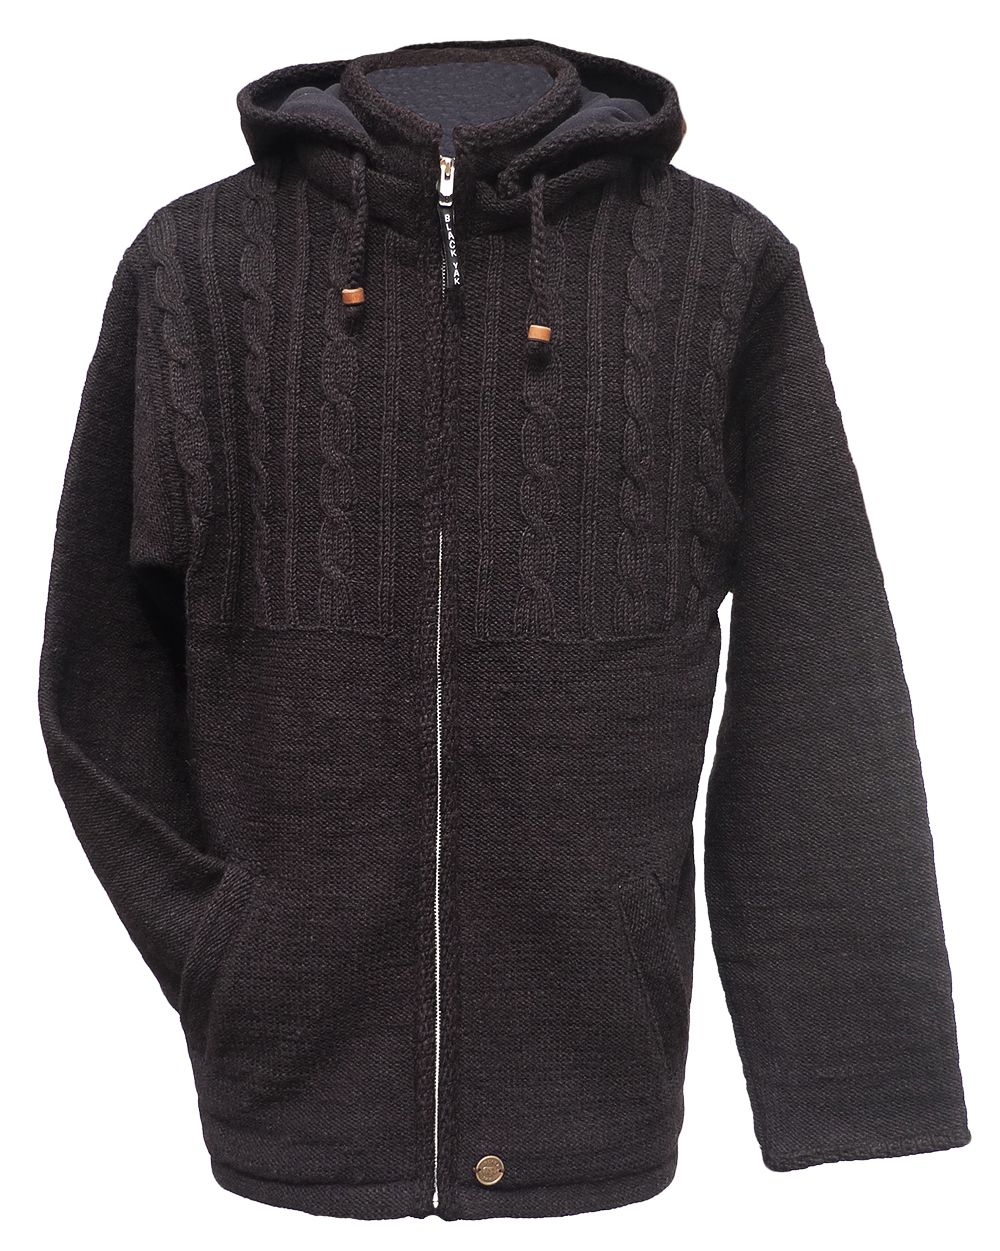 Fleece lined - detachable hood - jacket - half cable - Chocolate ...